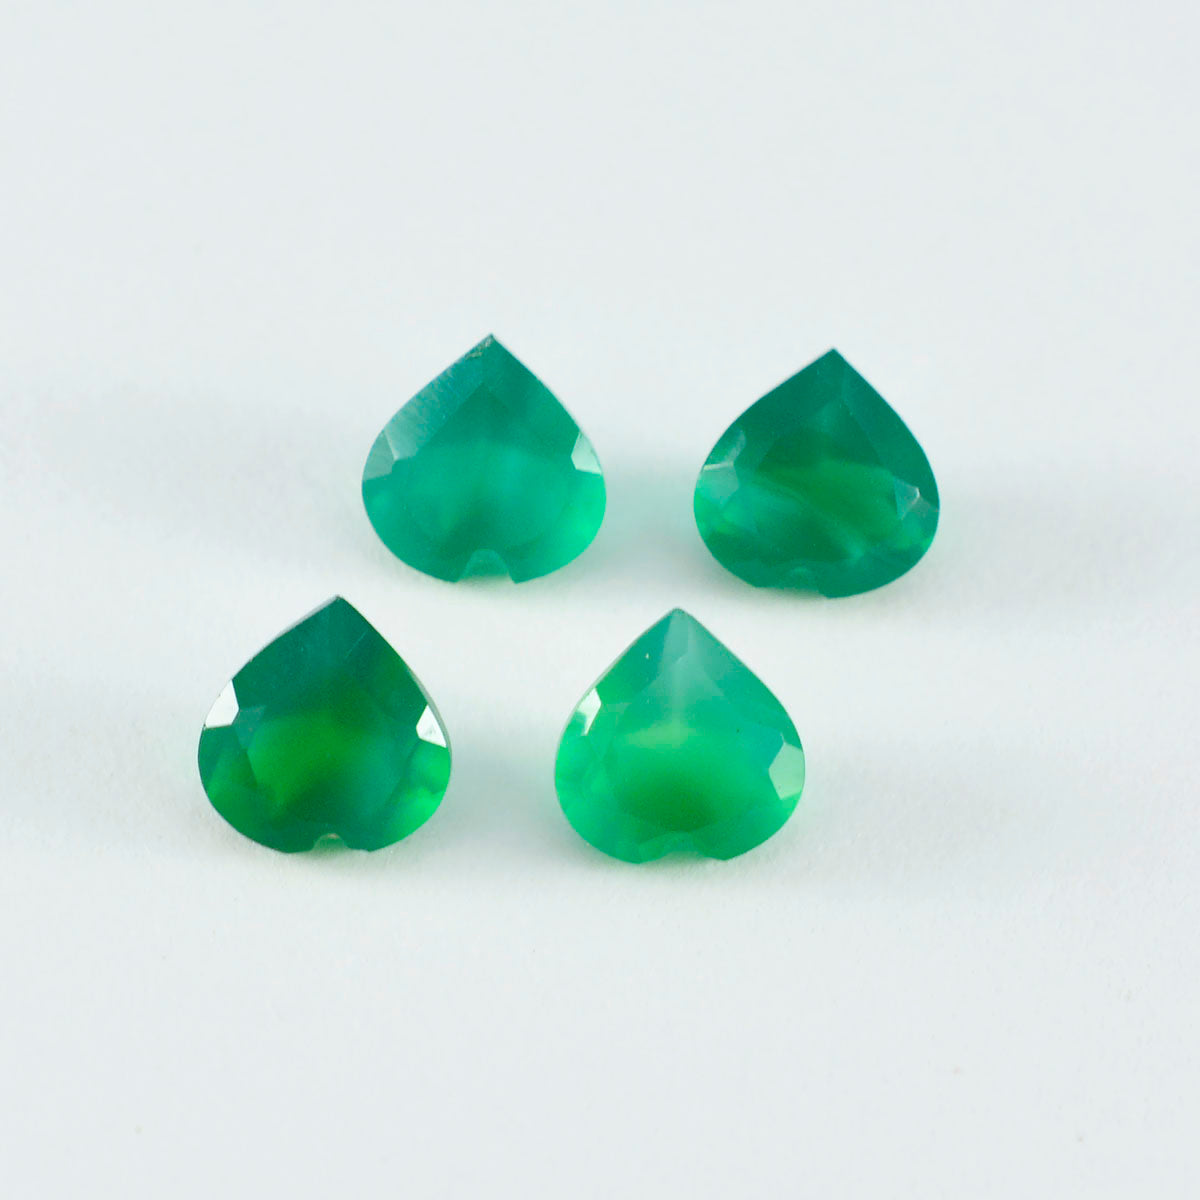 riyogems 1 шт. натуральный зеленый оникс граненый 6x6 мм в форме сердца, красивый качественный драгоценный камень